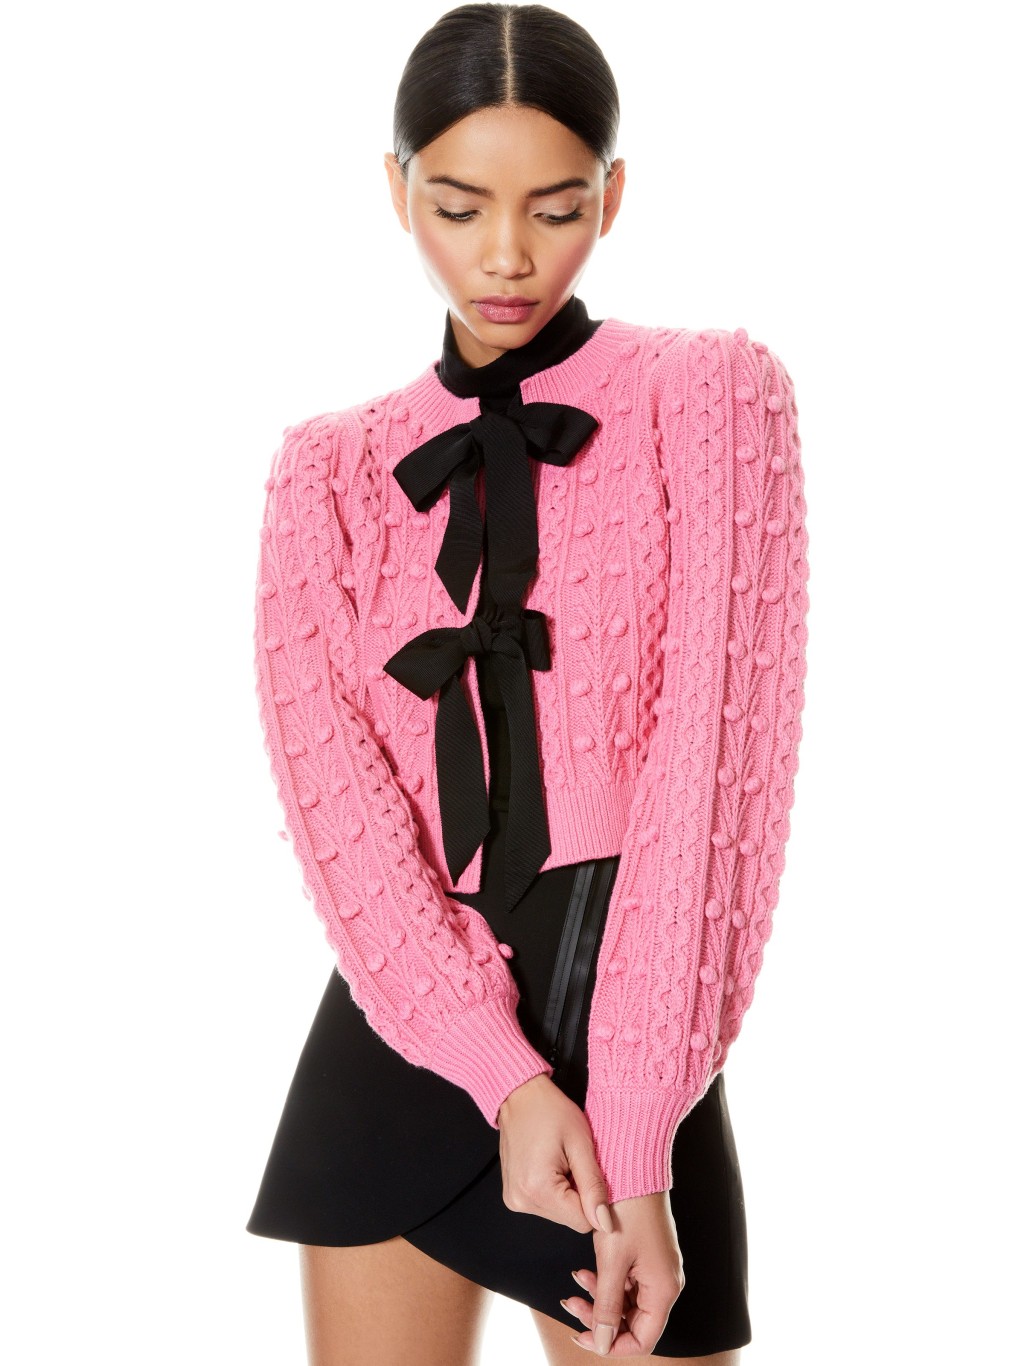 粉紅色針織短身外套/$4,250/A，胸前飾以黑色雙蝴蝶結，設計精緻又女性化，下襯黑色迷你裙，充滿少女味。